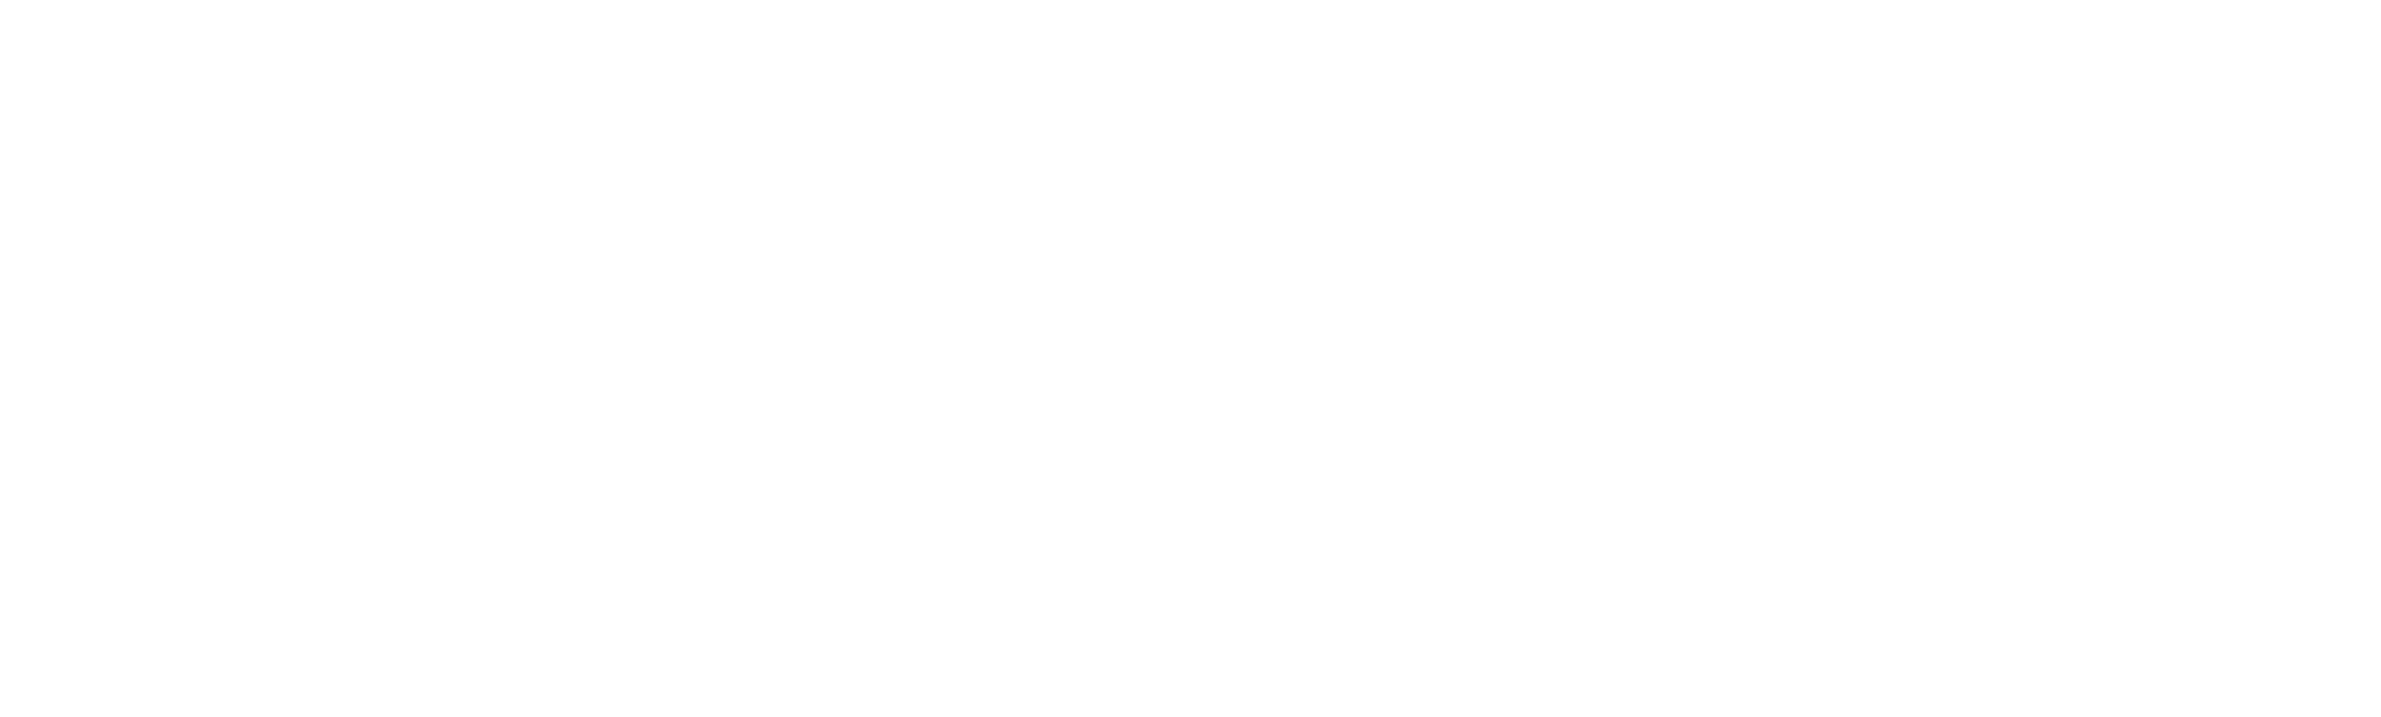 Lagoss logo for dark mode